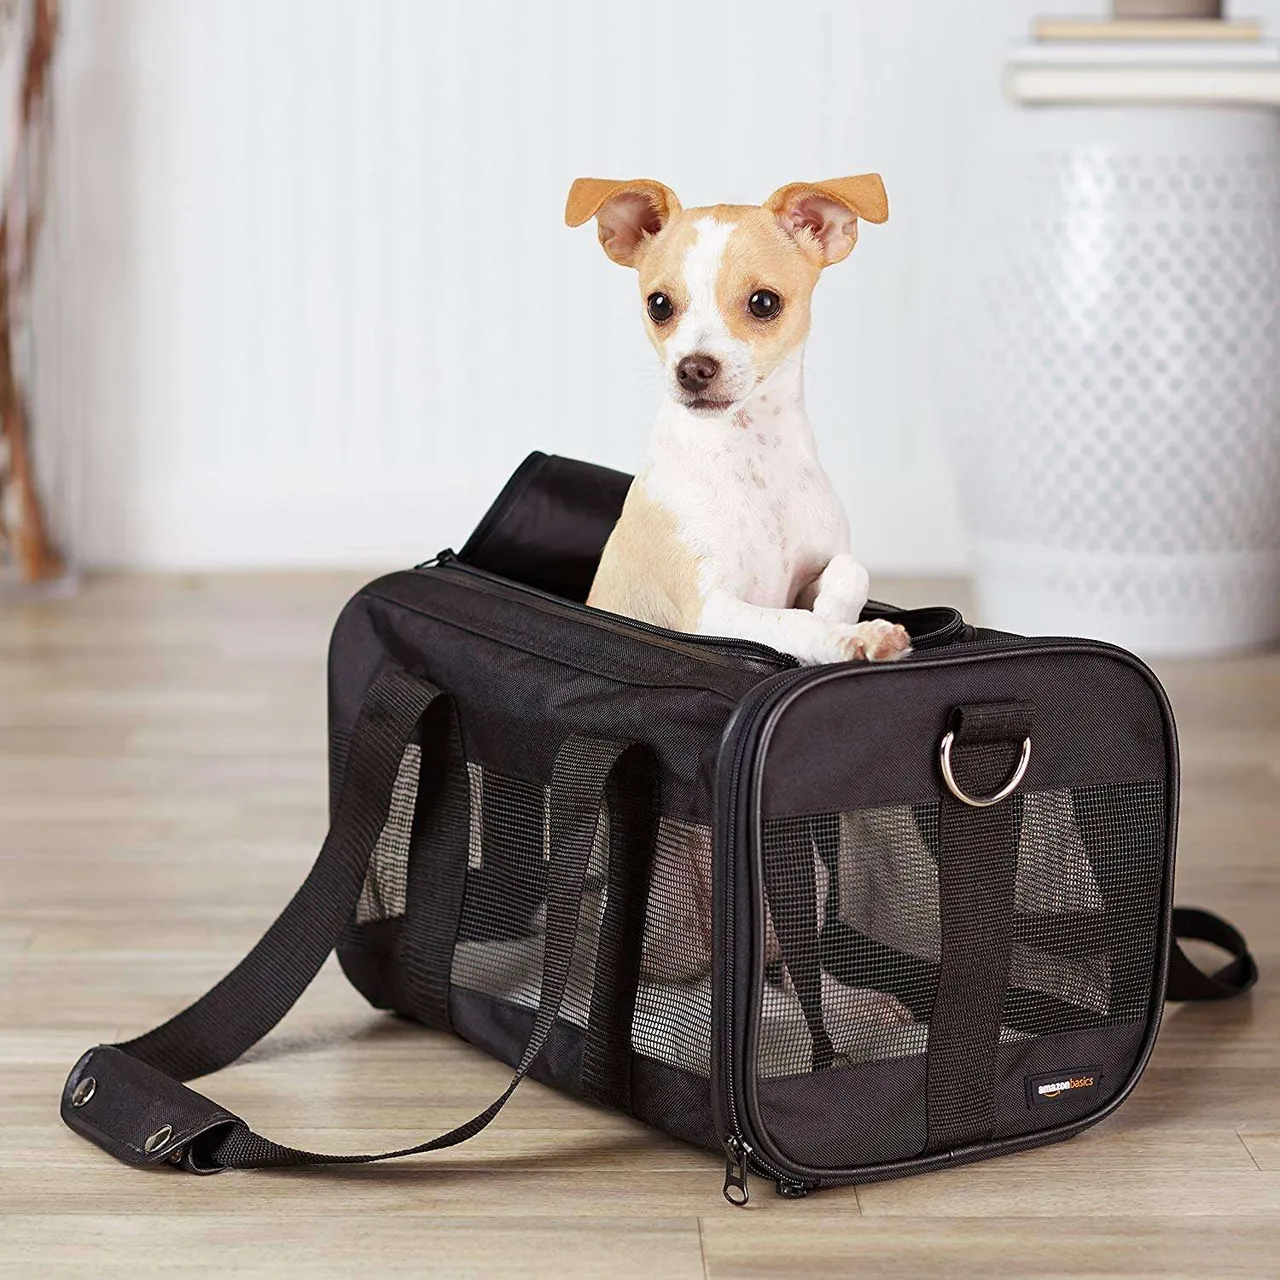 Amazon Basics Small Dog Carrier photo 4